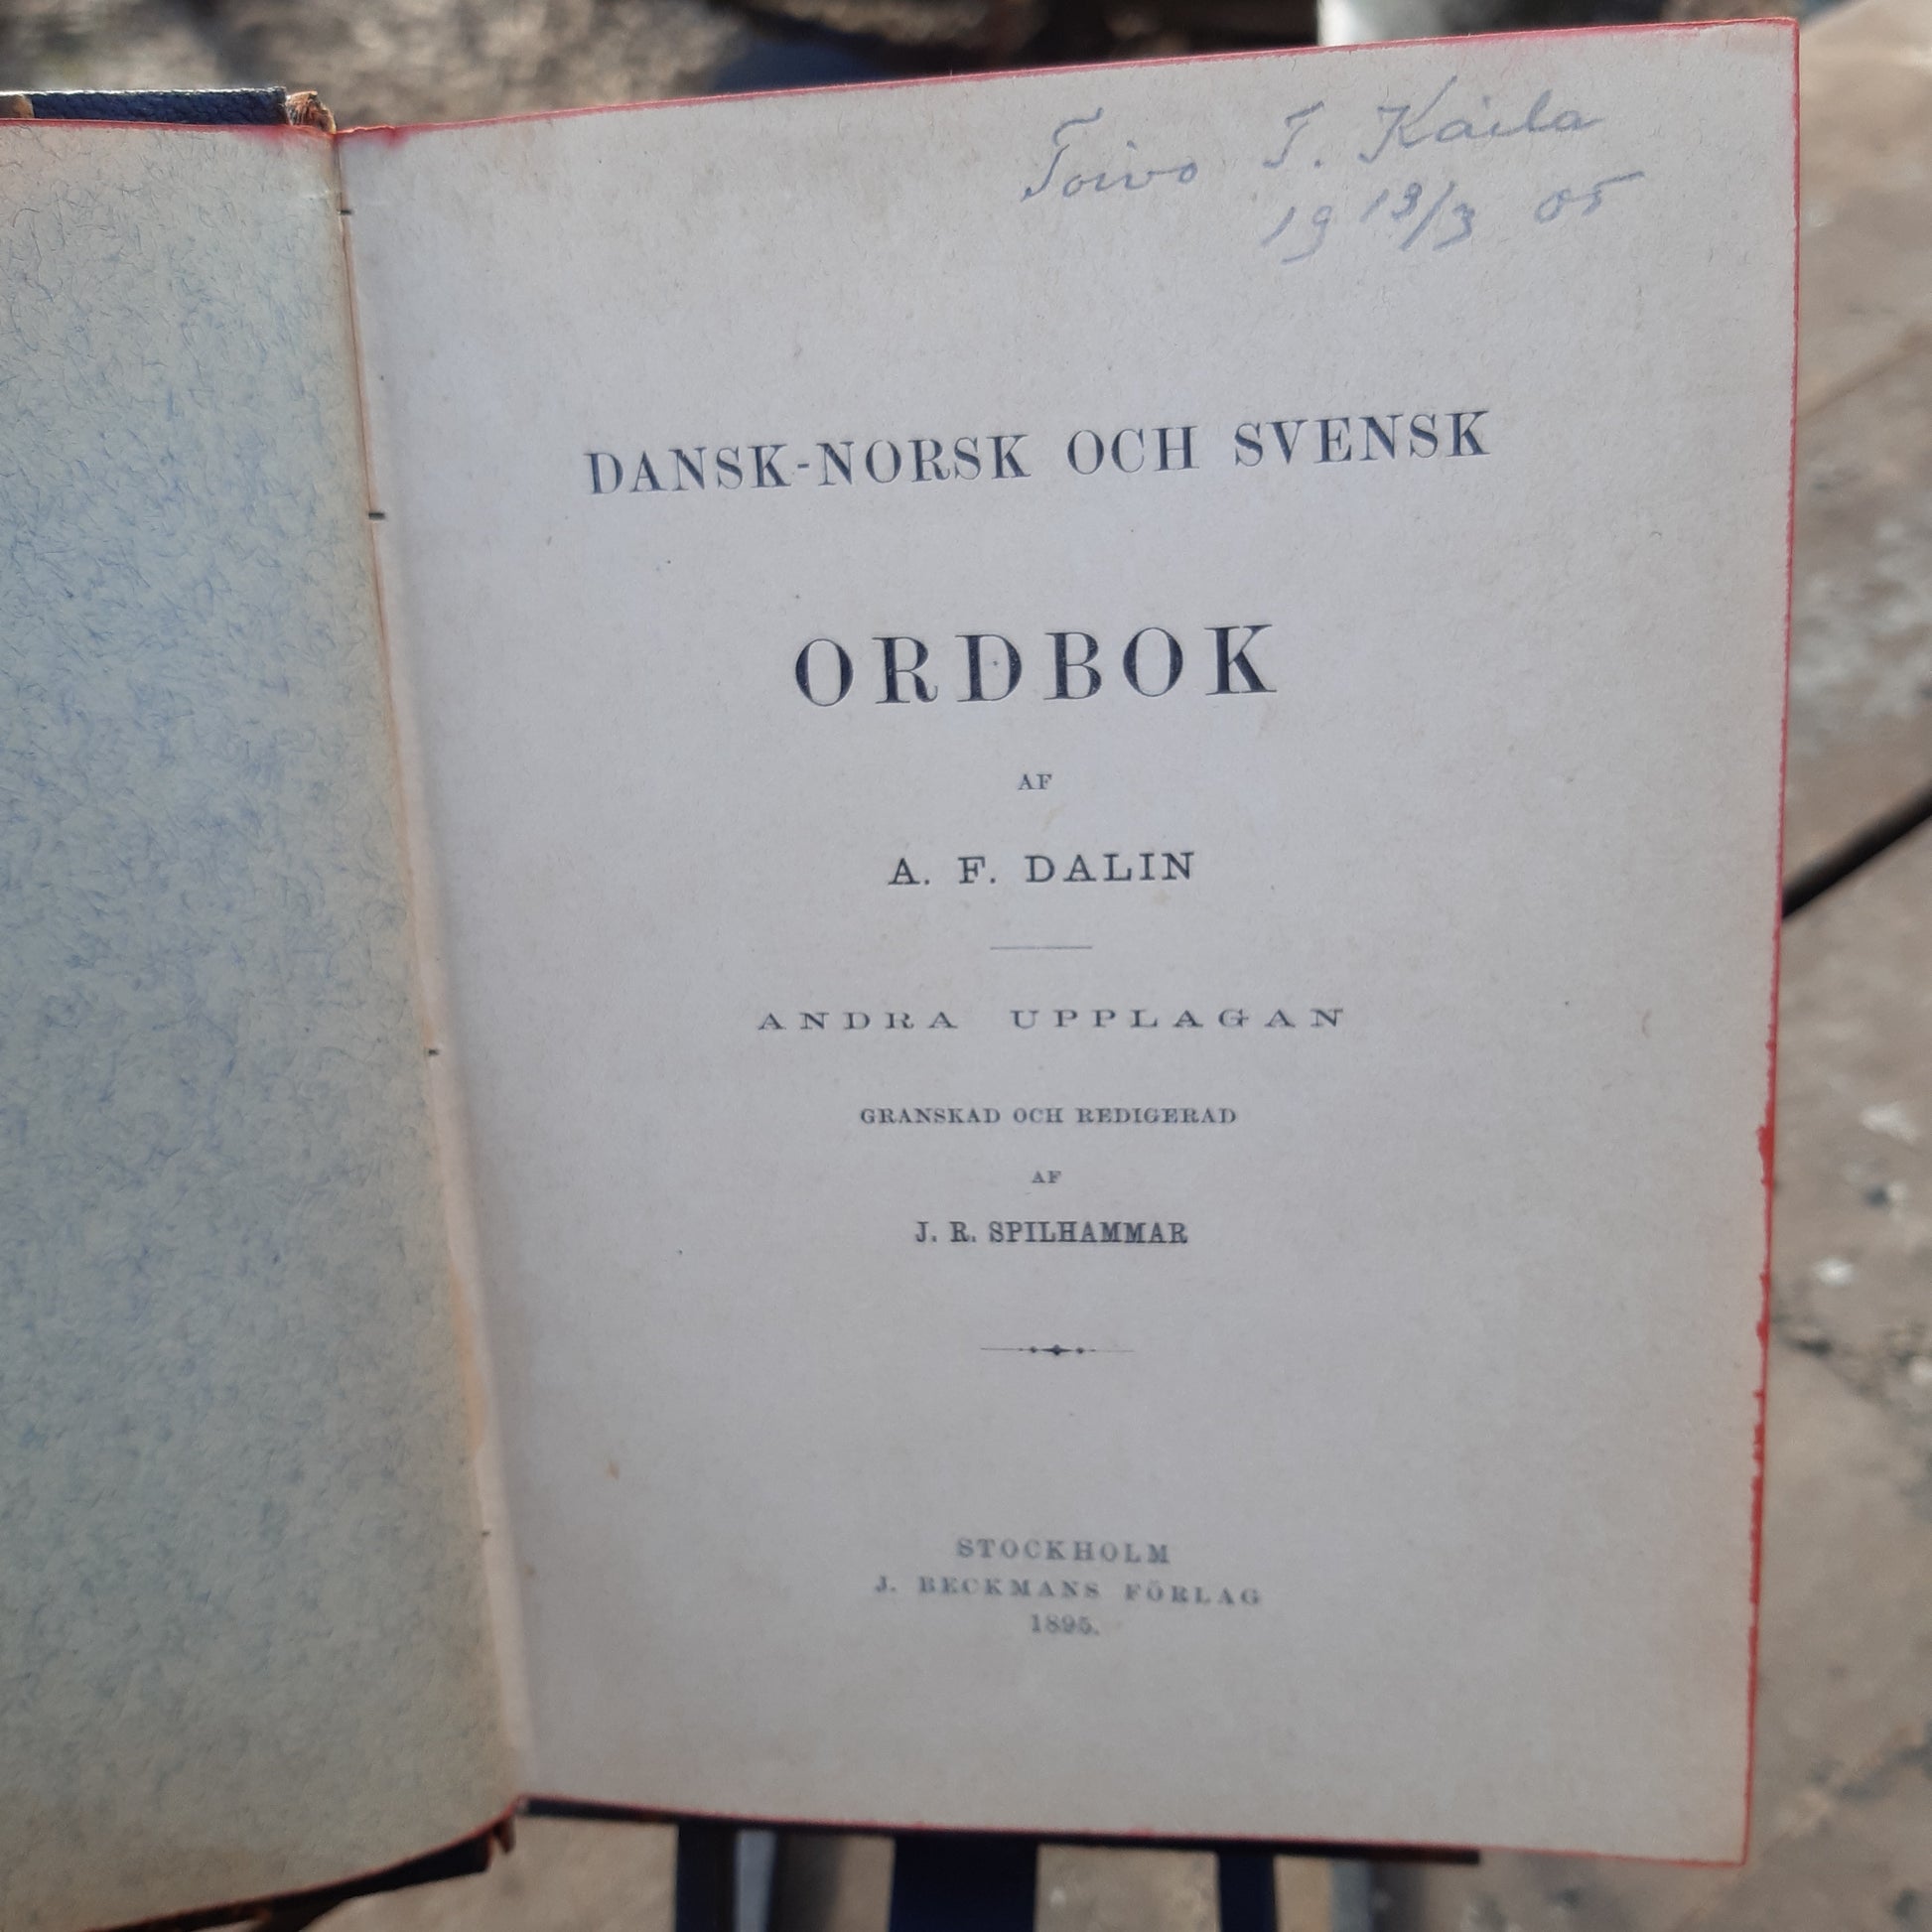 dansk-norsk och svensk ordbok - a.f. dalin - vuodelta 1895